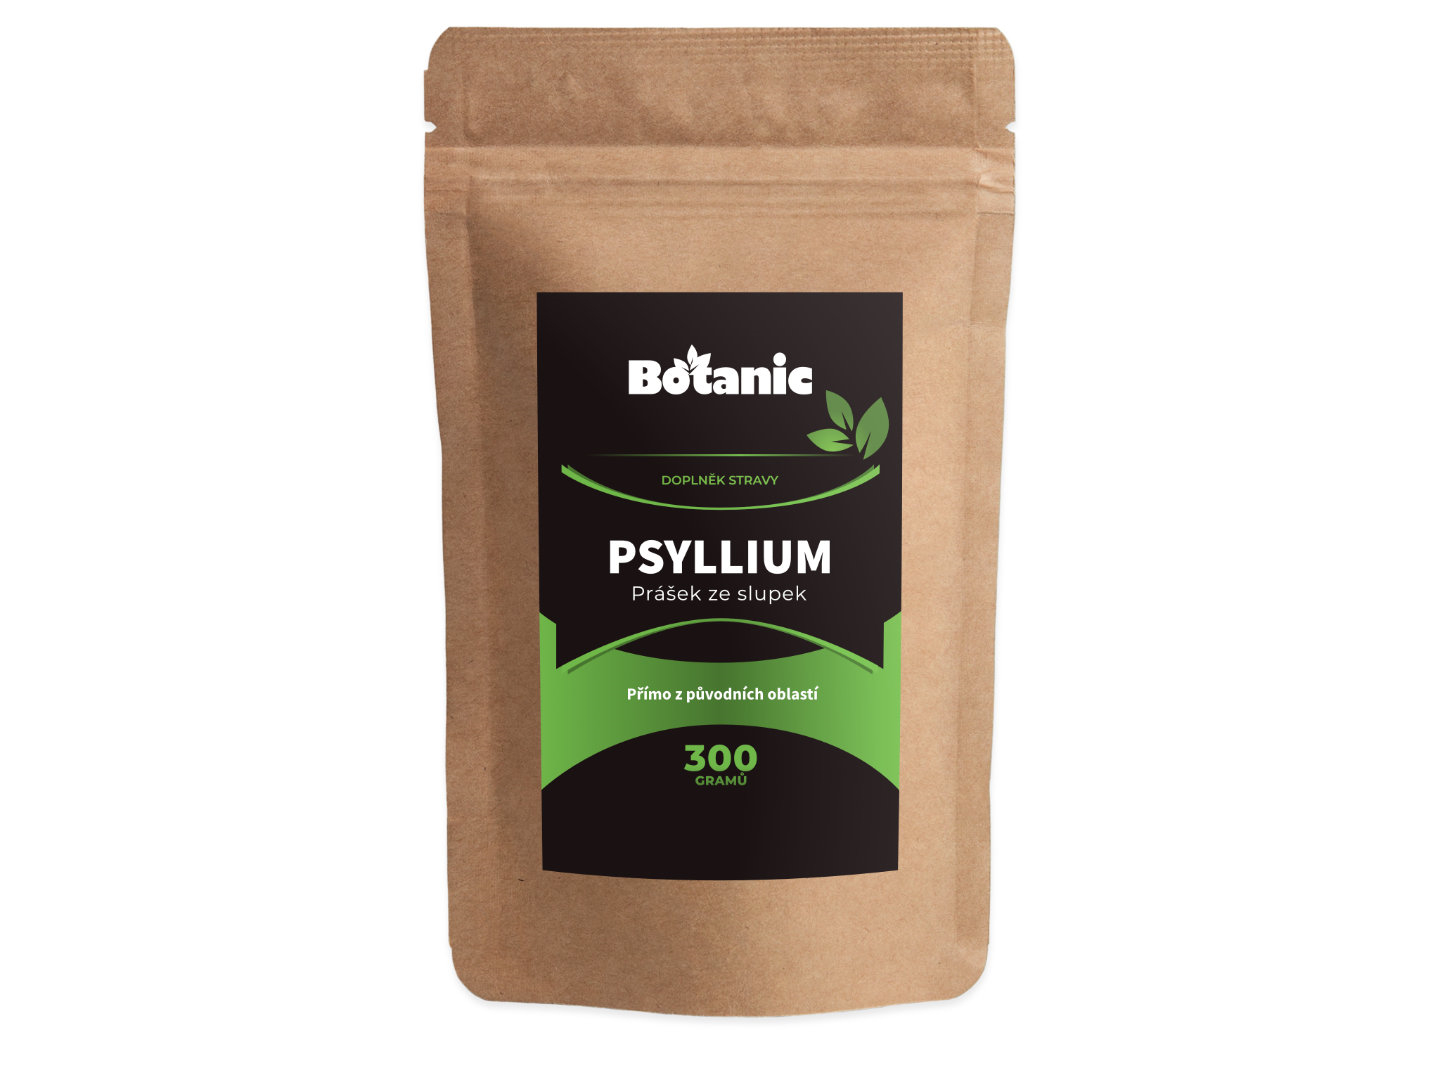 Botanic Psyllium 300g